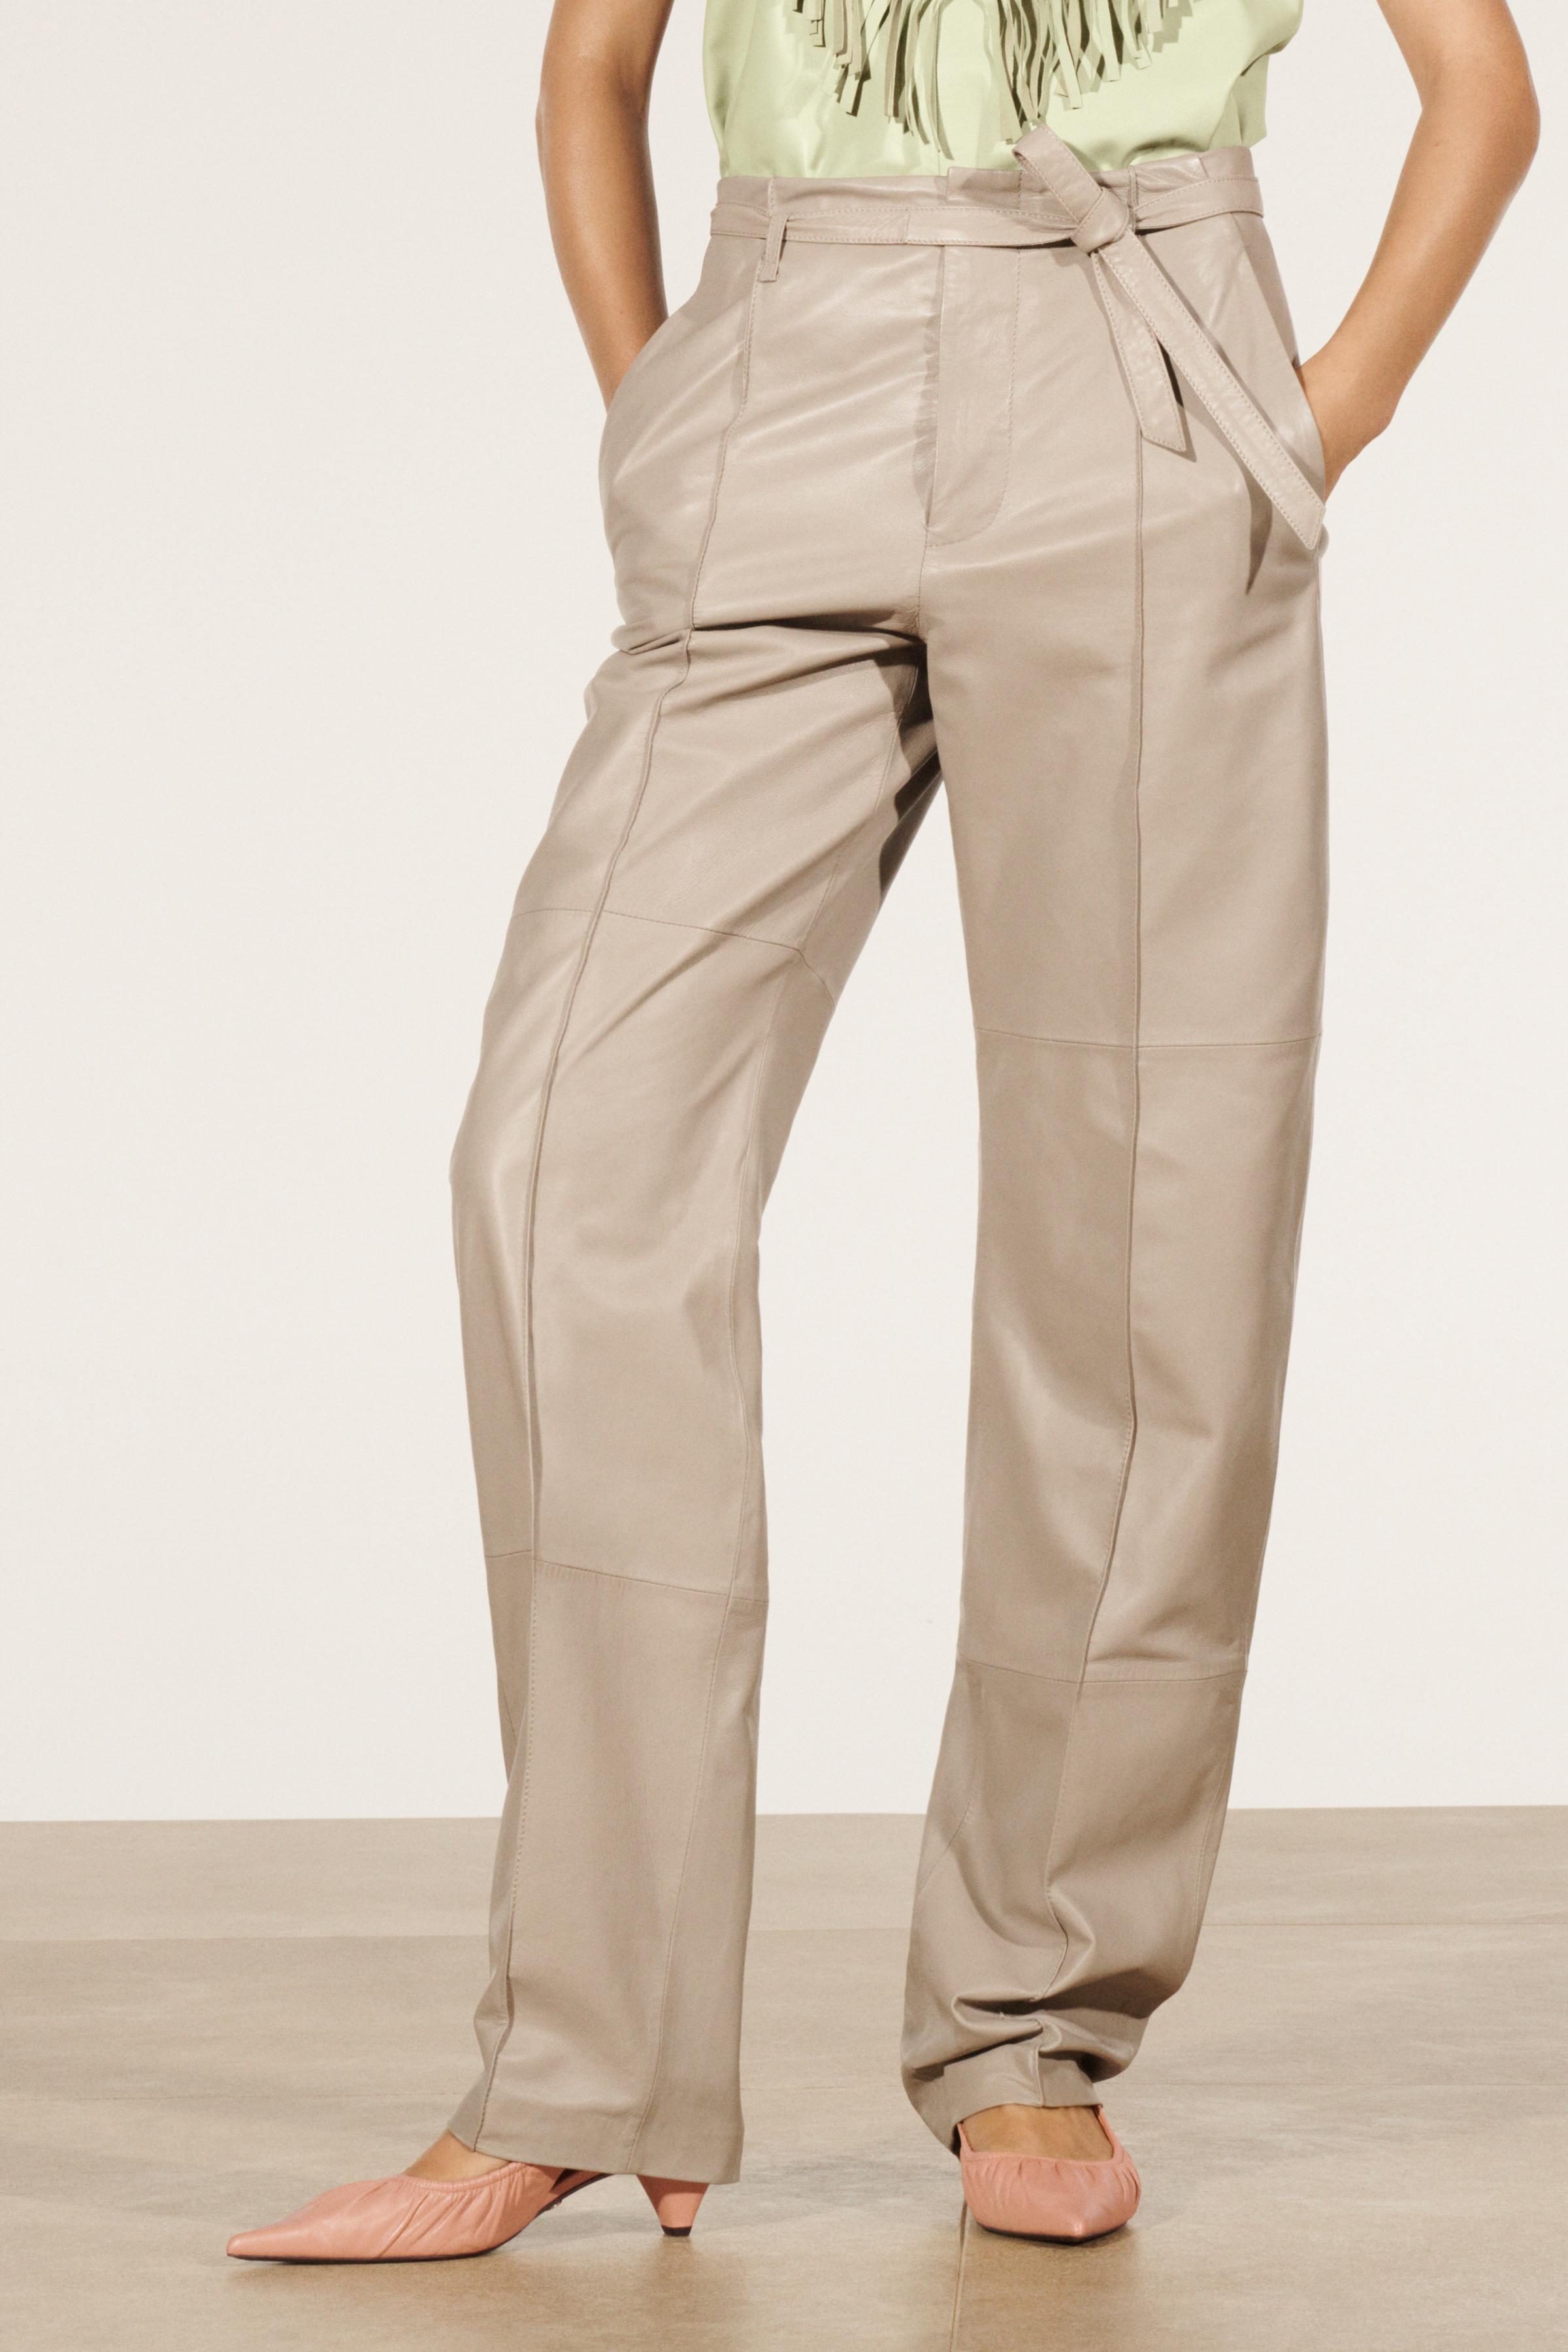 Pantalones Cuero de Mujer, Nueva Colección Online